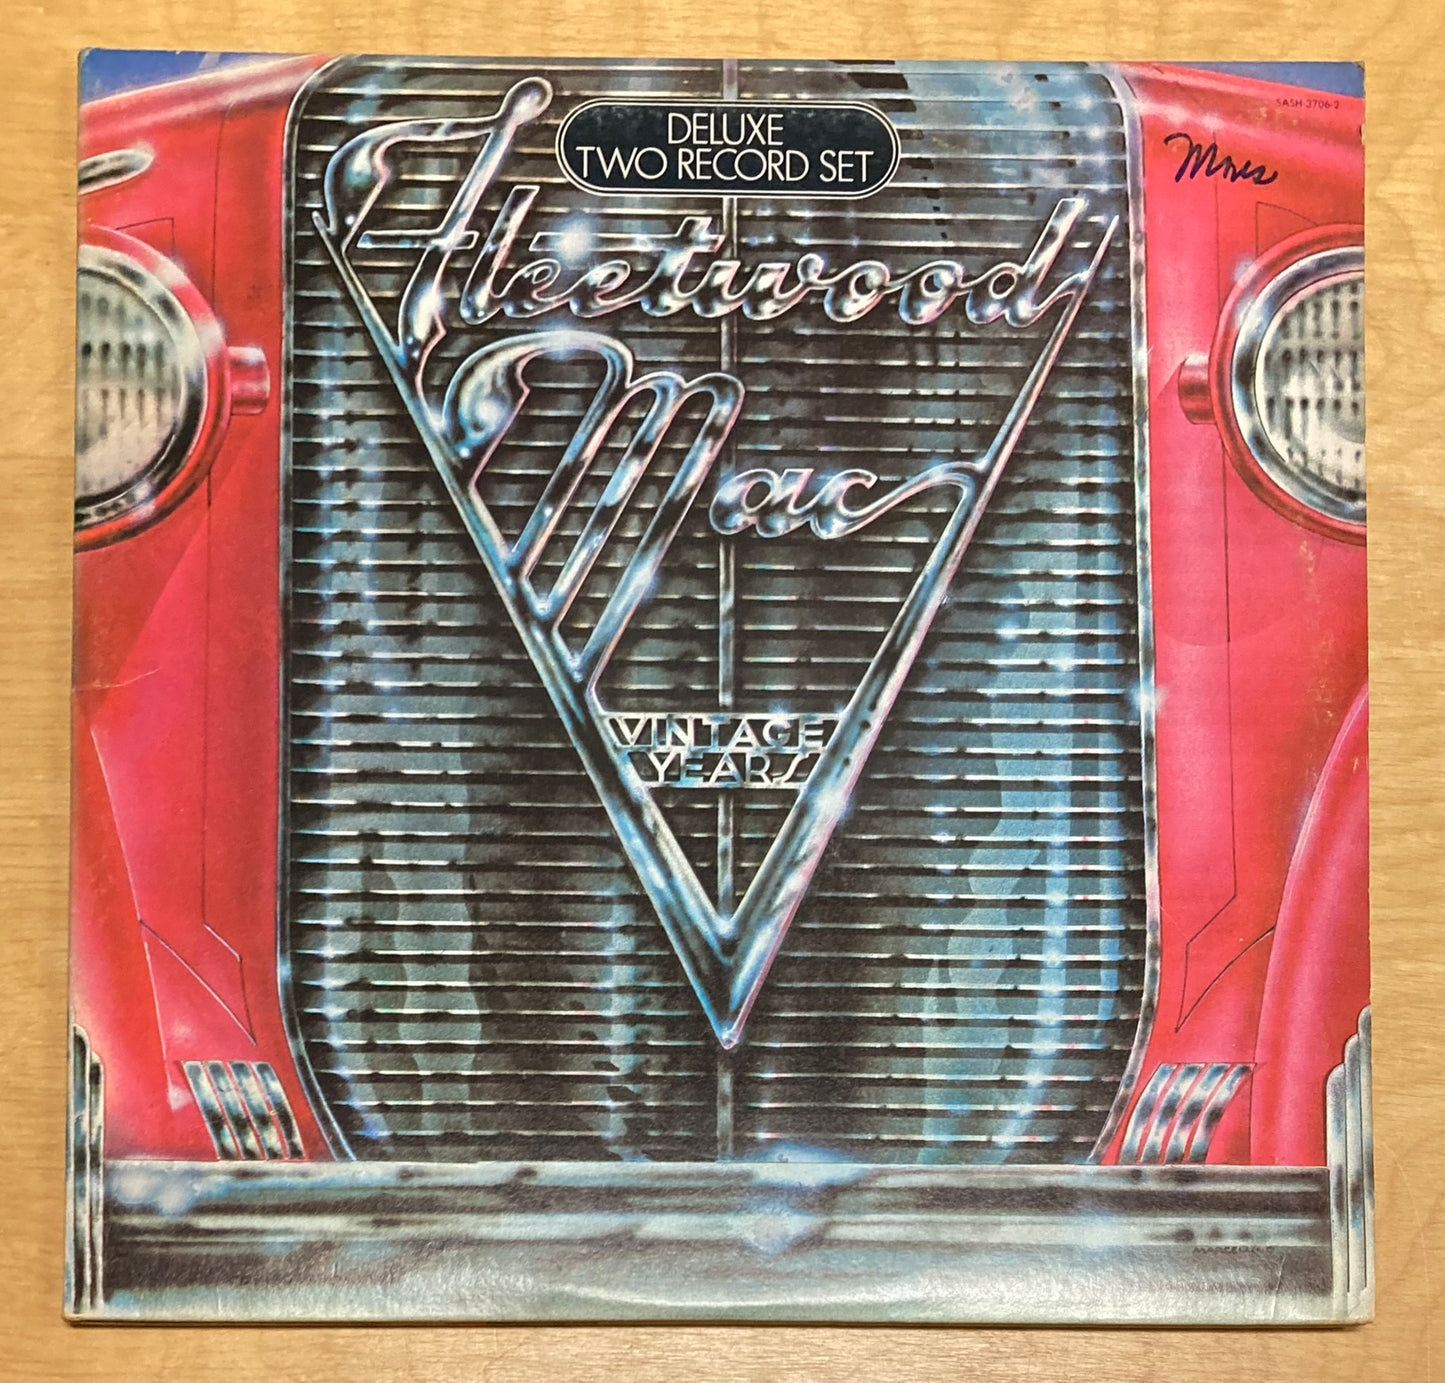 Vintage Years - Fleetwood Mac